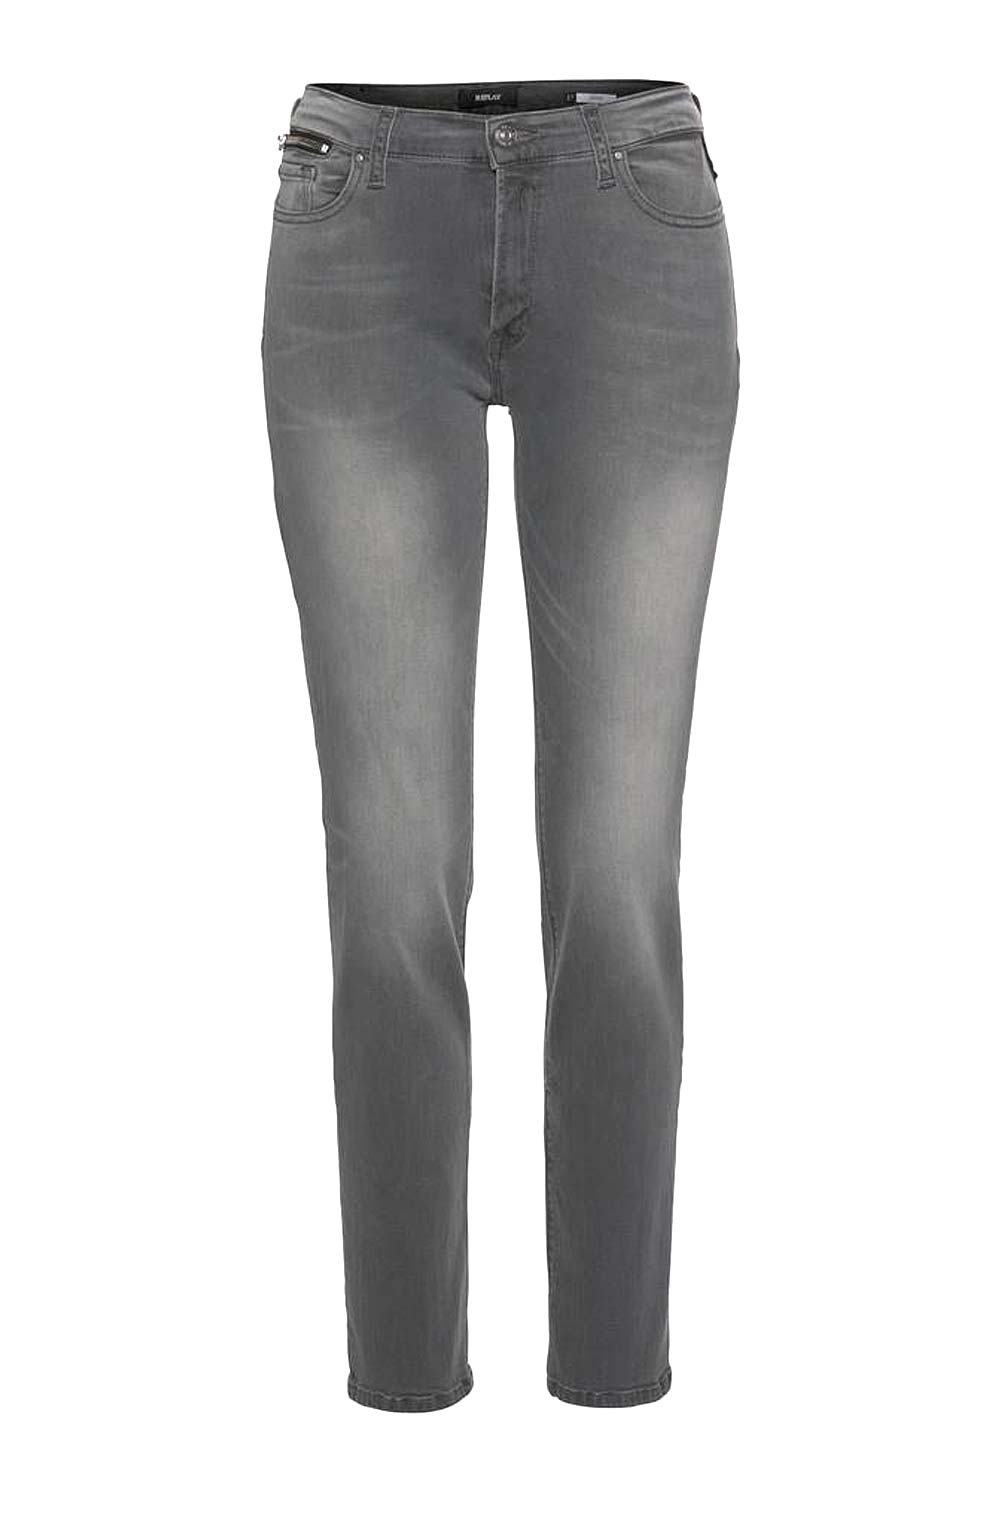 Replay Damen Marken-Jeans "NEW JODEY", grau, 32 inch